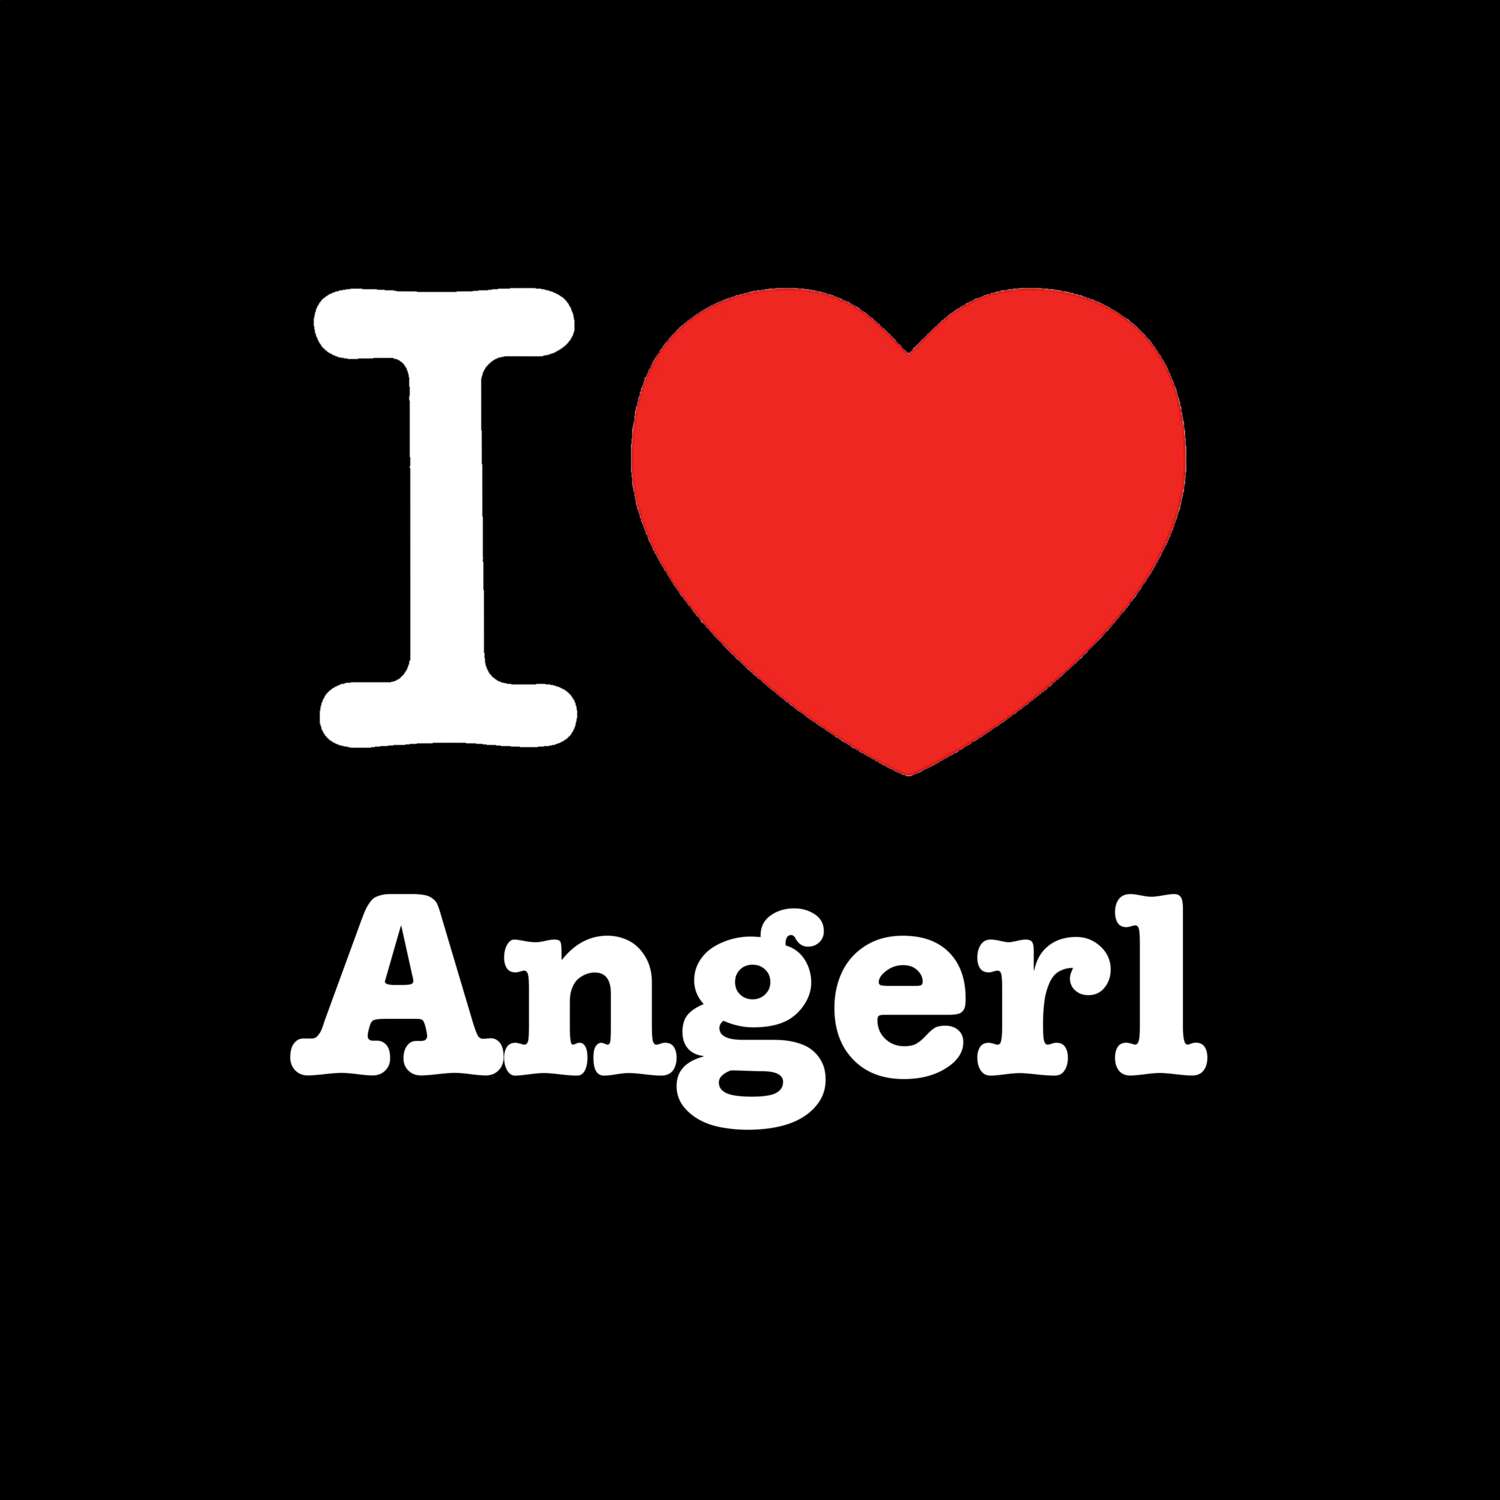 Angerl T-Shirt »I love«